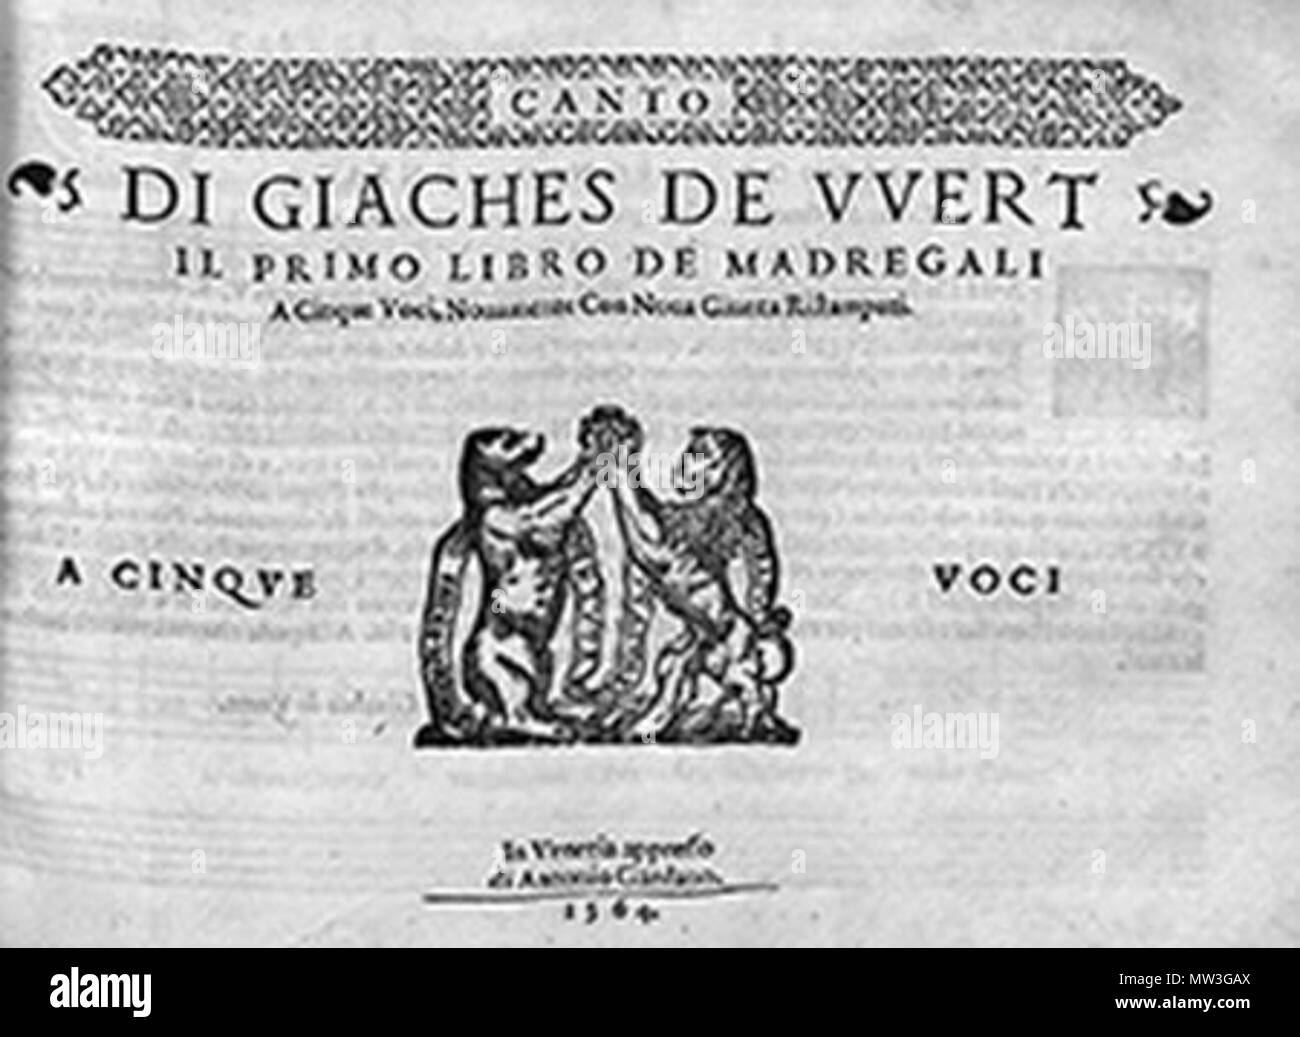 Wert 1 243 Giaches de Wert, primer libro de madrigales (1564) Stock Photo